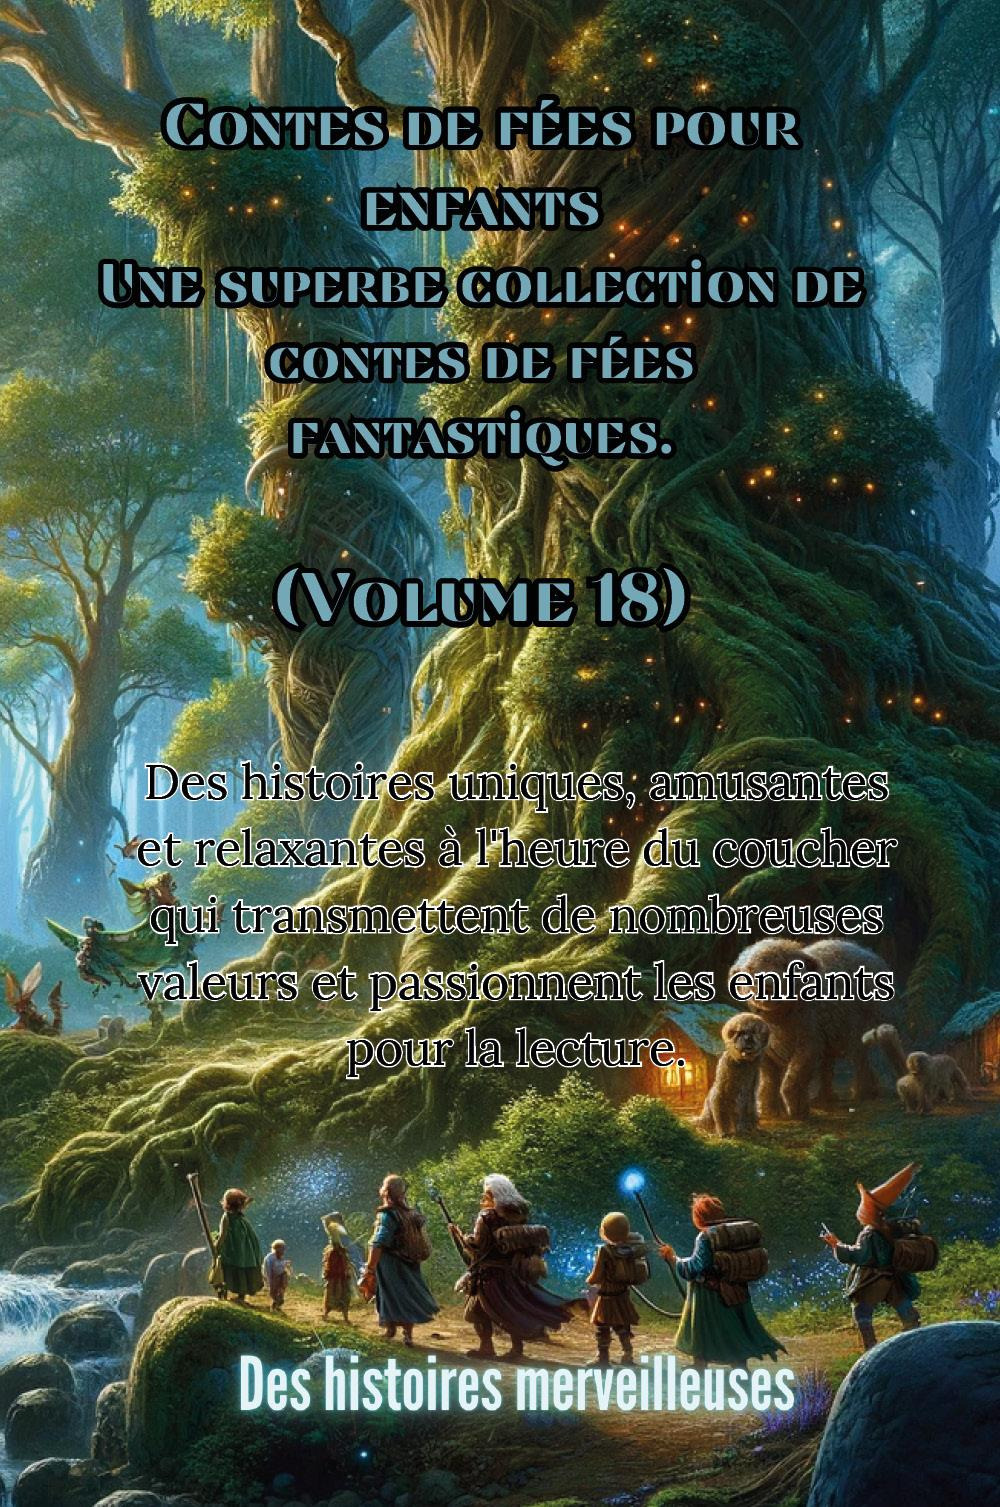 Contes de fées pour enfants. Une superbe collection de contes de fées fantastiques. Vol. 18